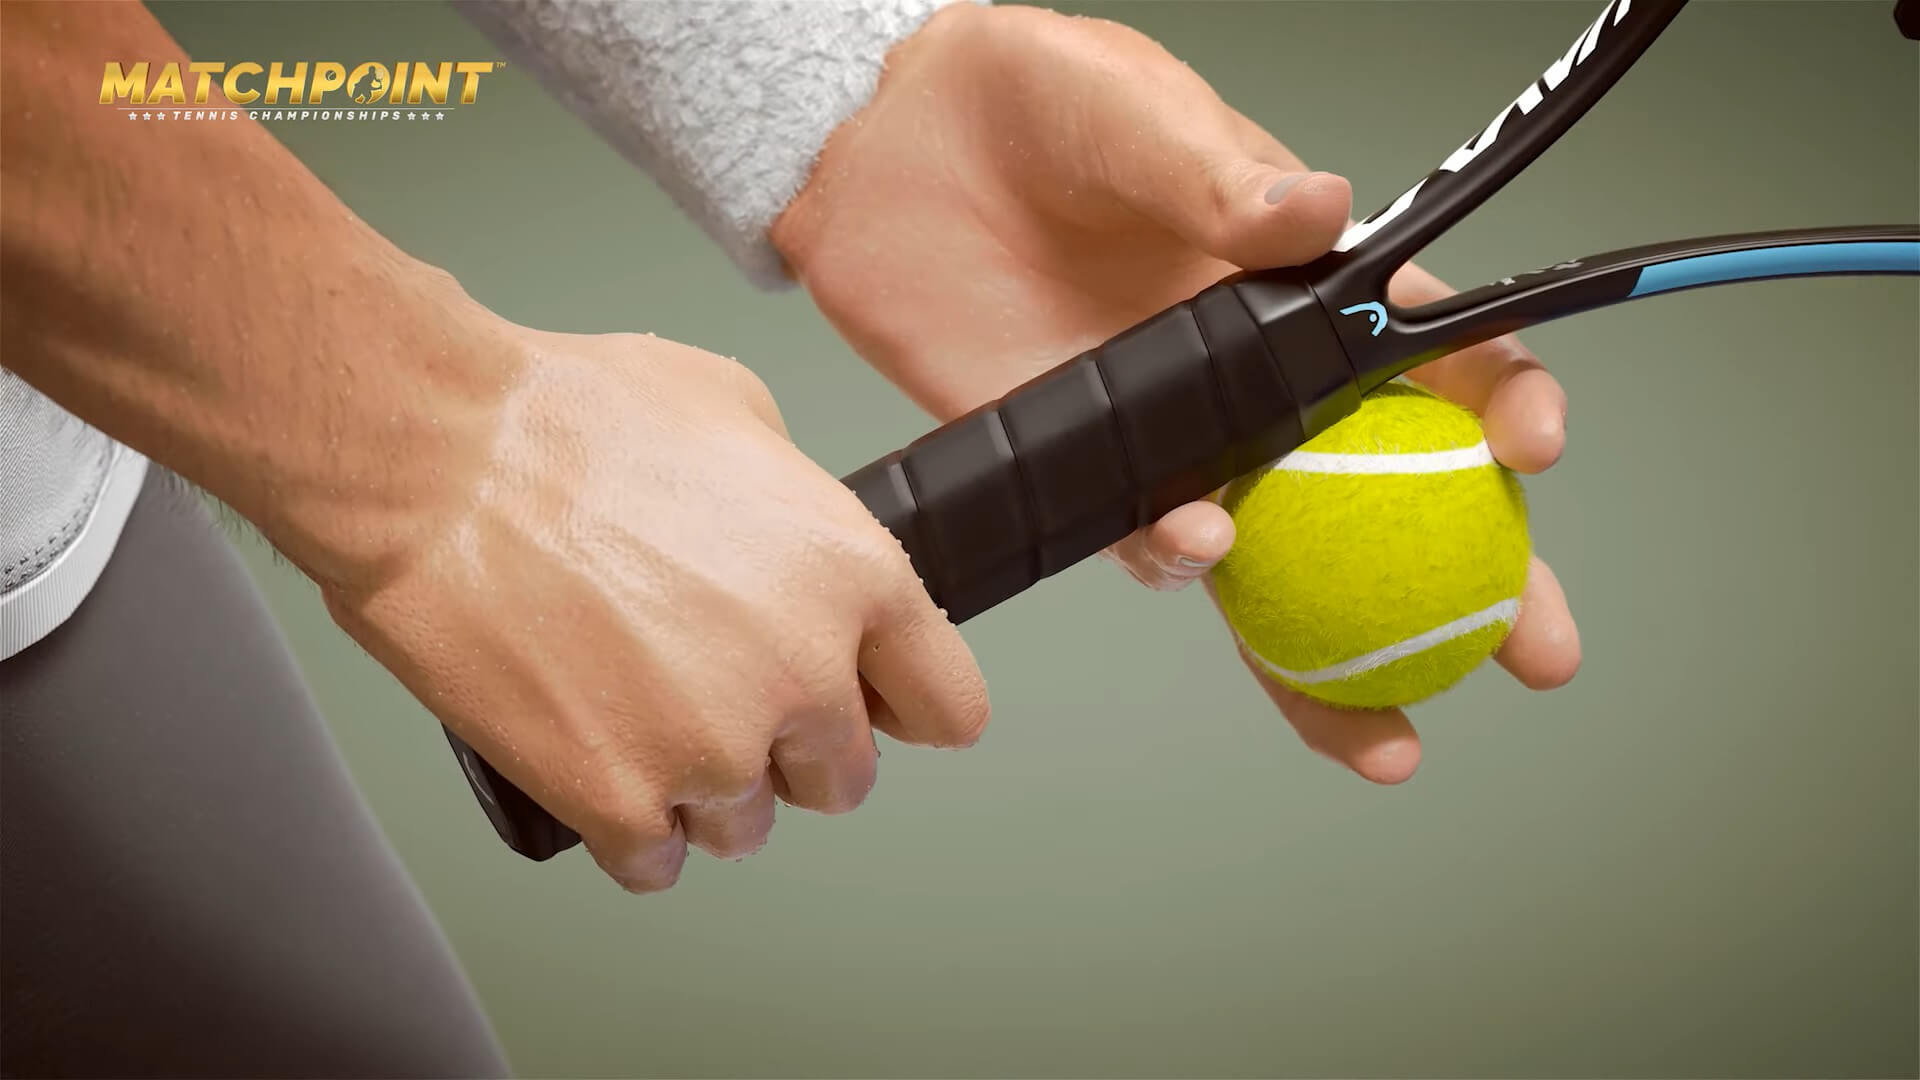 Matchpoint - Tennis Championships получила оценки от критиков, игра доступна в Game Pass: с сайта NEWXBOXONE.RU